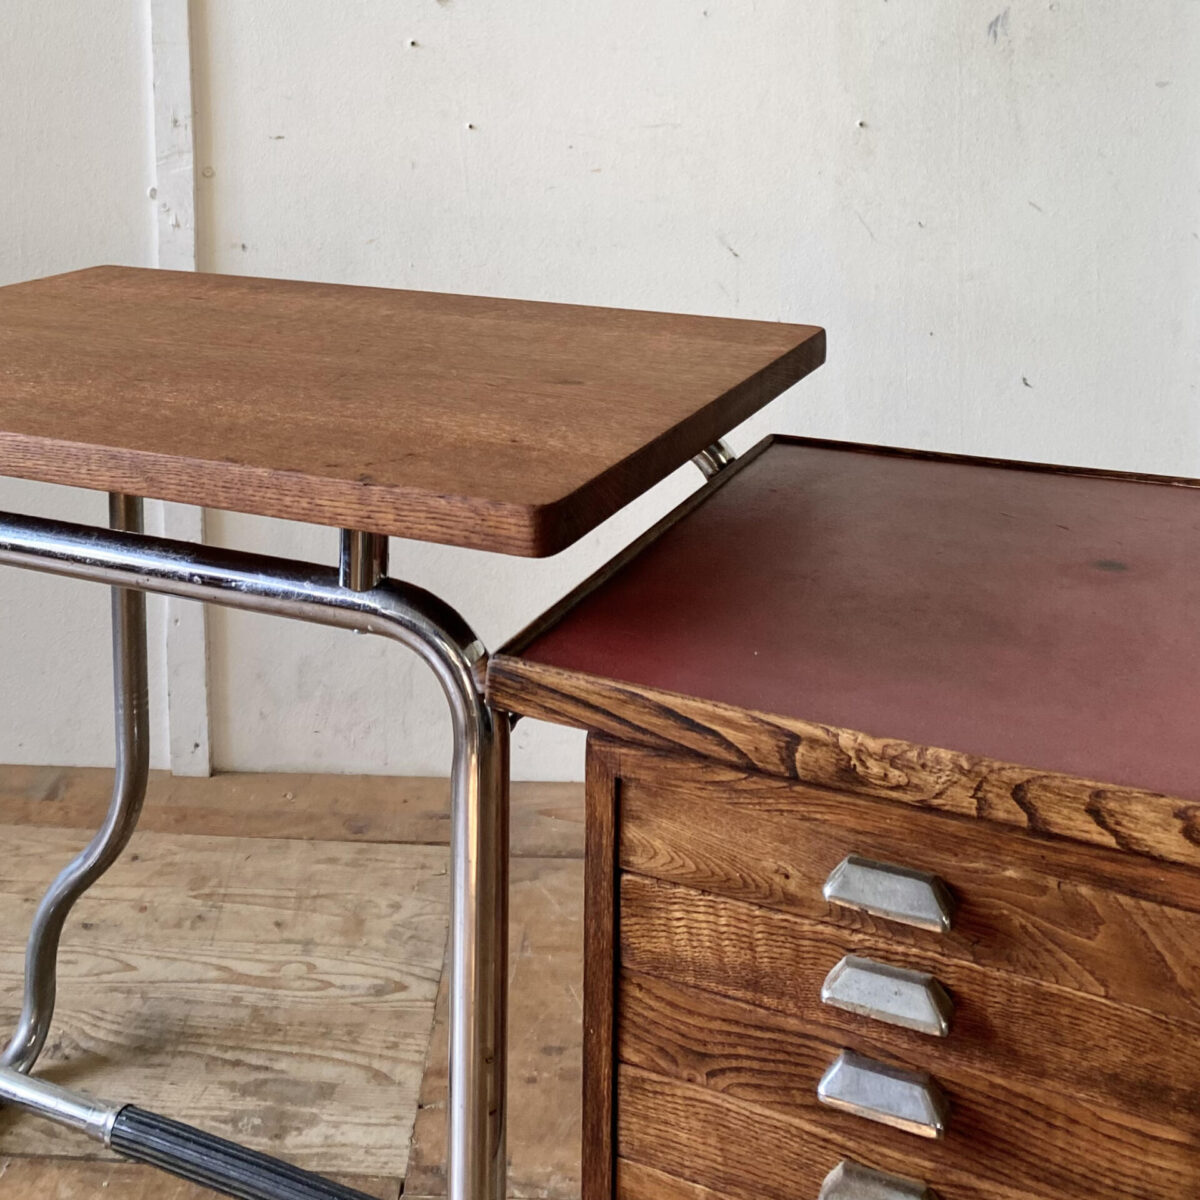 Deuxieme.shop Bauhaus Schreibtisch. Kleiner Schreibtisch aus Eichenholz mit Schubladen, auf gebogenem Stahlrohr Gestell. 127.5x47cm Höhe 71.5cm. Das Tischblatt ist aus Eiche Vollholz, die klappbare Seitenablage ist furniert. Die rechte rote Ablage ist aus Linoleum. Das verchromte Metallgestell hat etwas Flugrost und Patina. 